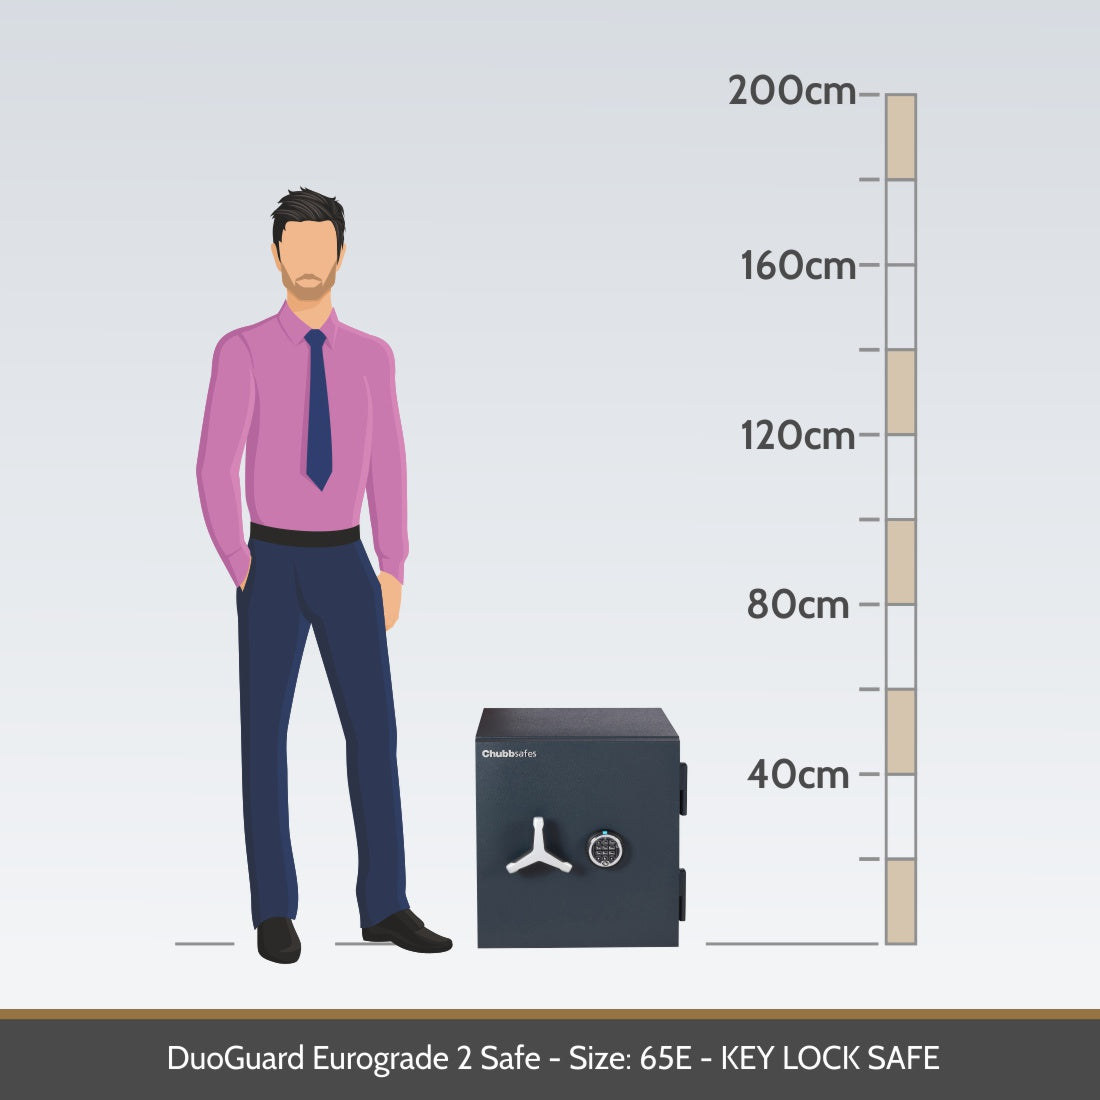 DuoGuard Eurograde 2 Safe Size 65E Digital Lock